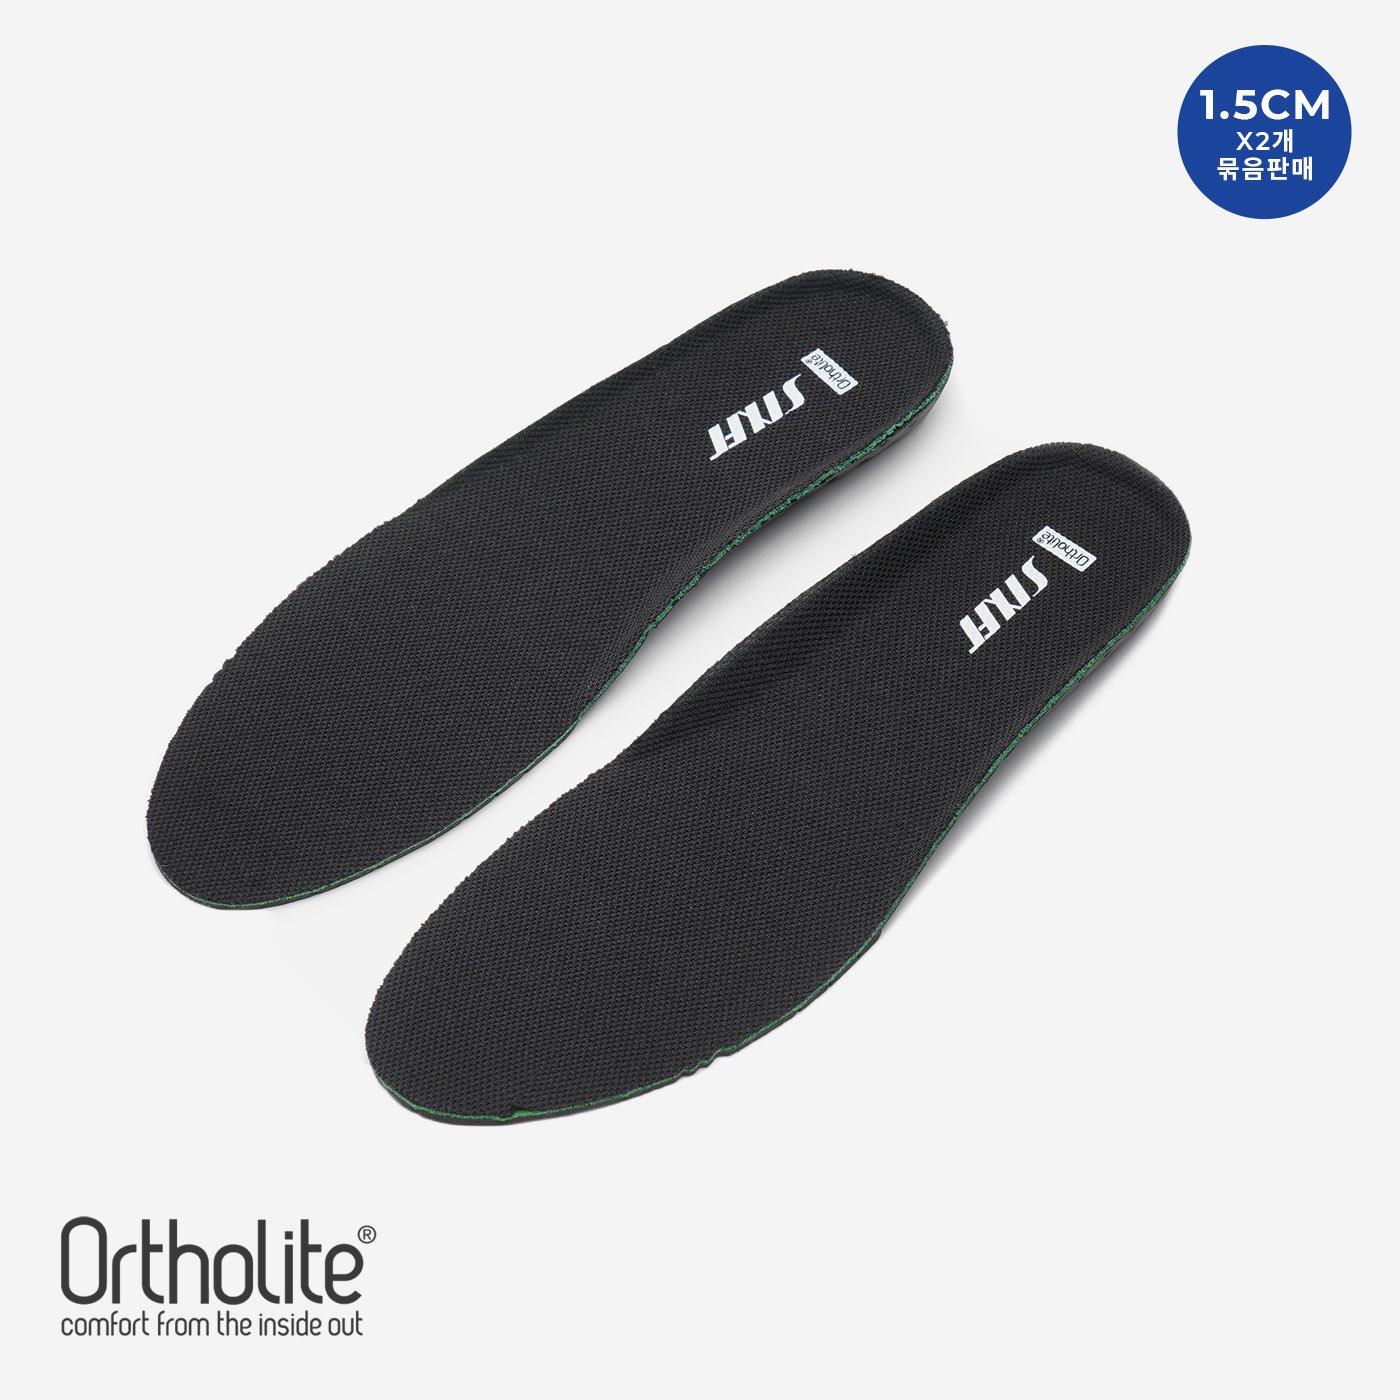 오솔라이트 1.5cm 키높이 블랙 인솔 (Ortholite System Black Insole) 2개 묶음상품